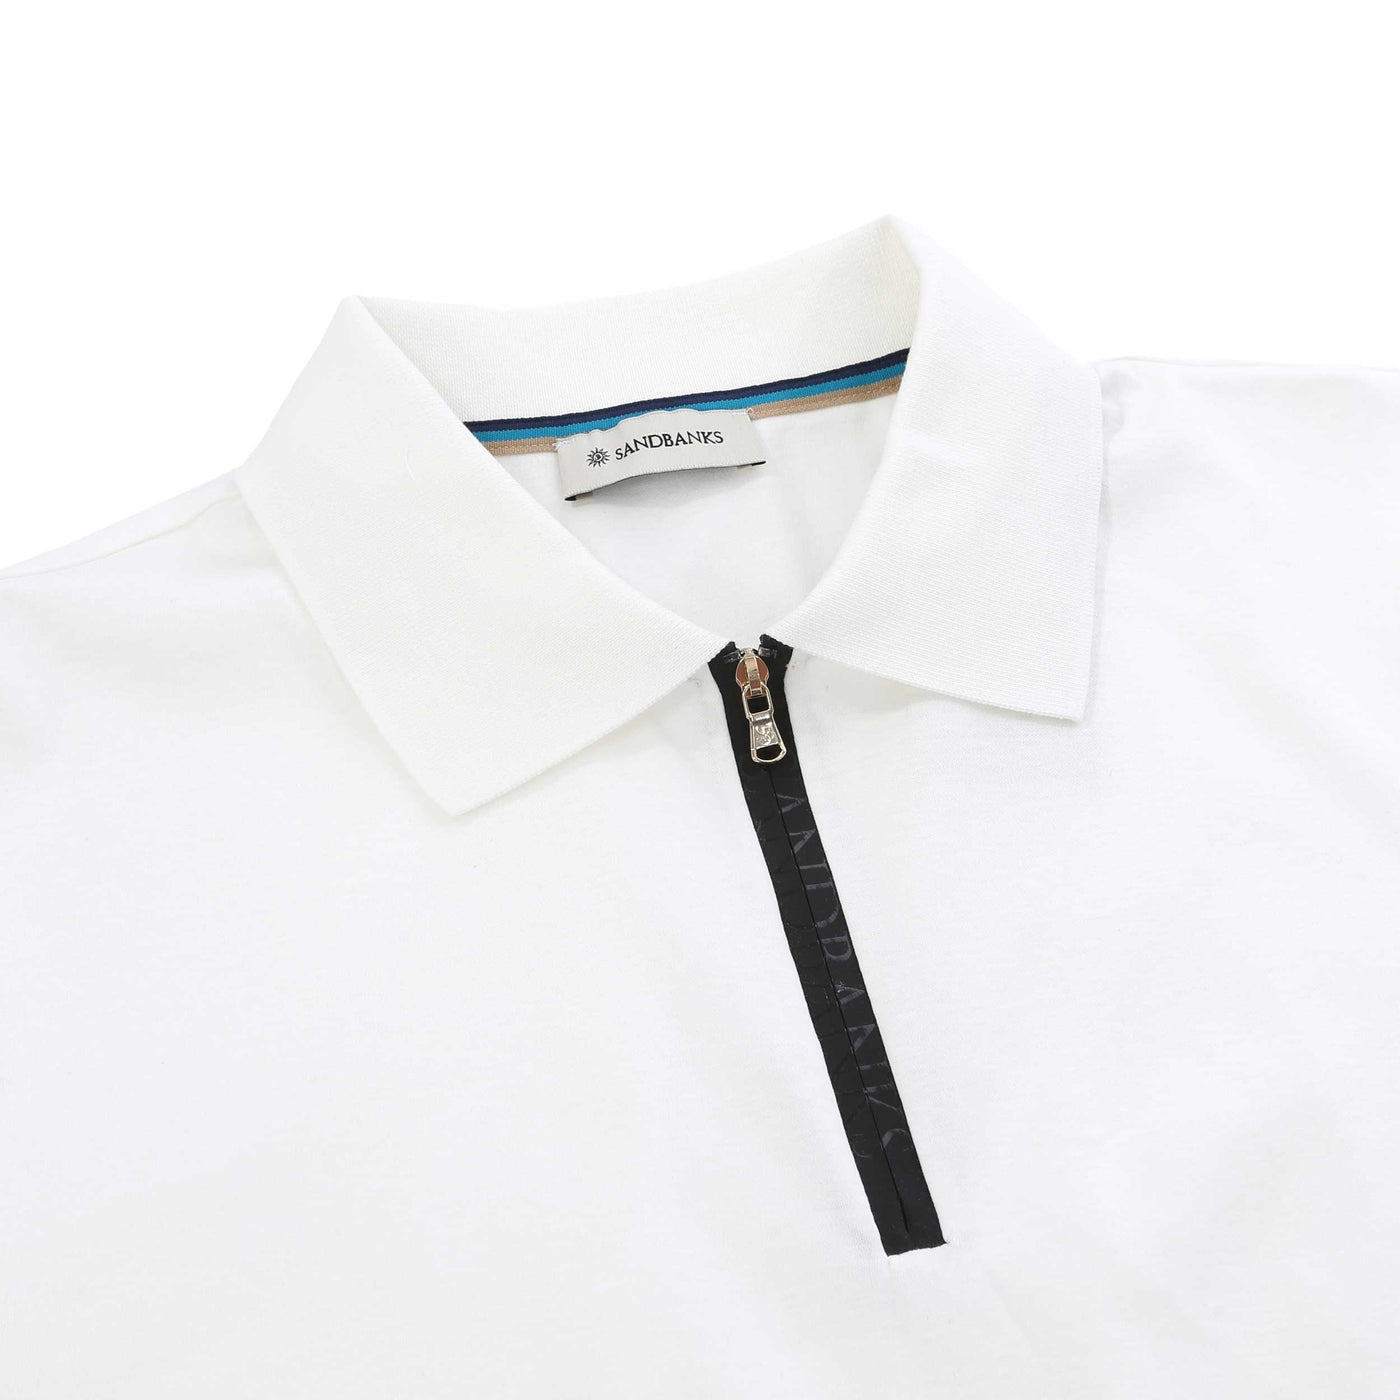 Sandbanks Silicone Zip Polo Shirt in White Collar